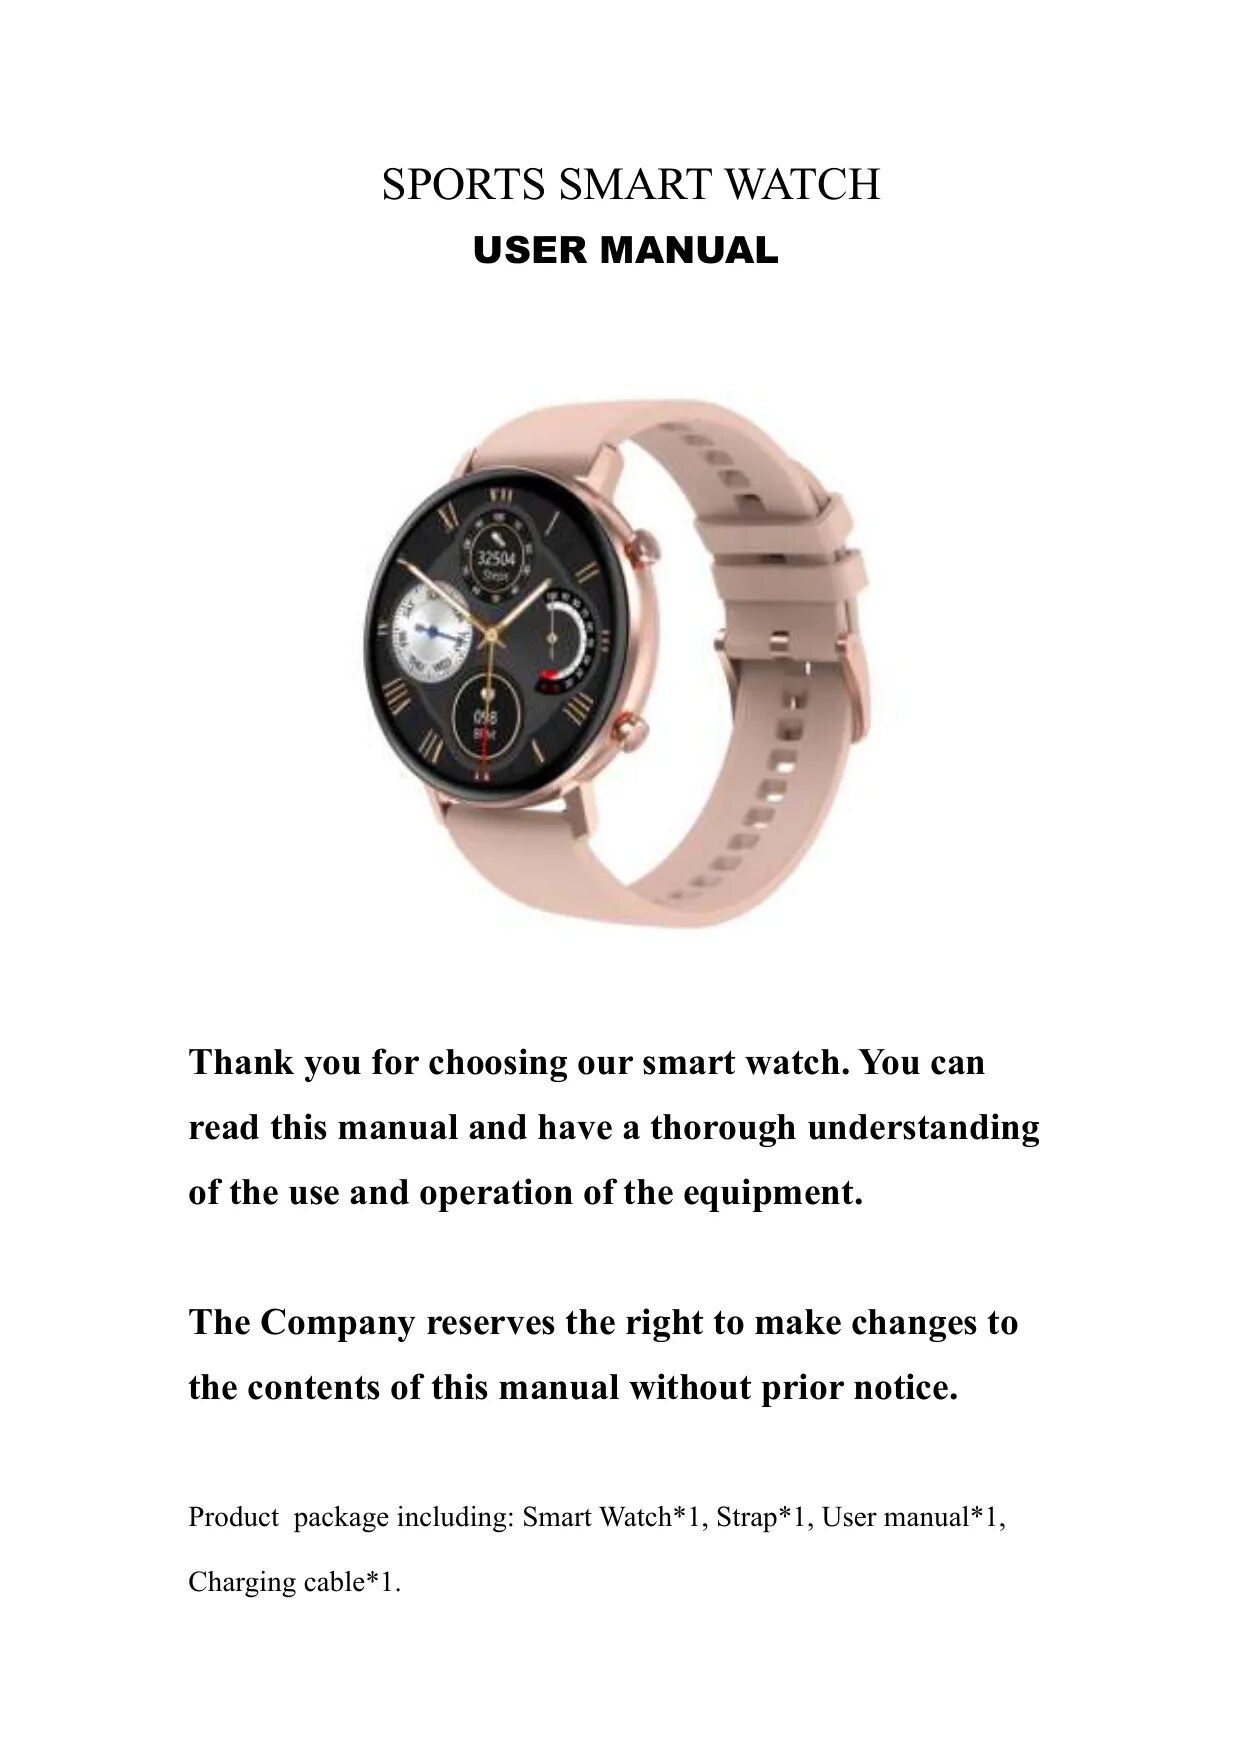 Смарт часы SMARTWATCH manual. Умные часы fk99 Smart watch user's manual. Смарт часы 129 user manual. Смарт часы Smart watch user manual. Sport watch инструкция